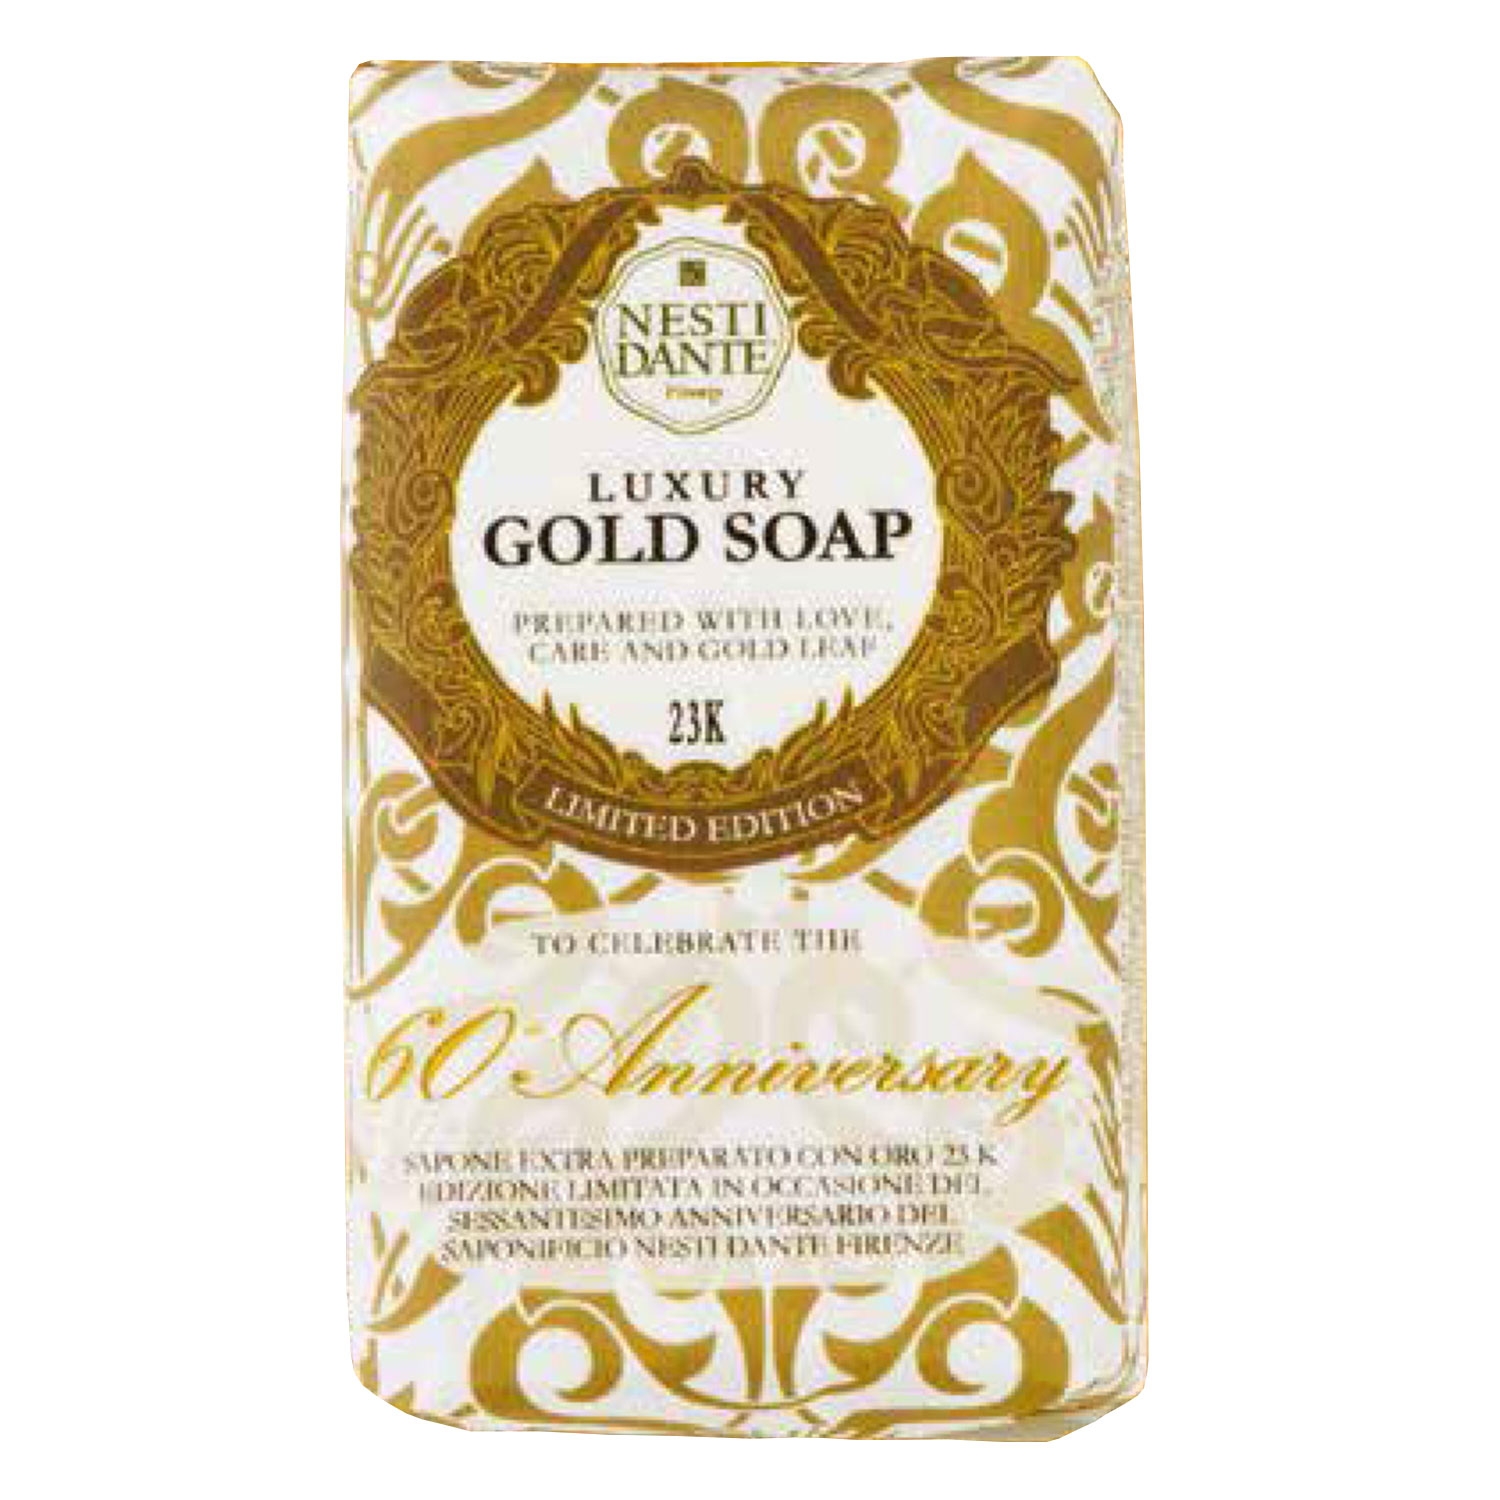 Produktbild von Nesti Dante - Luxury Gold Soap